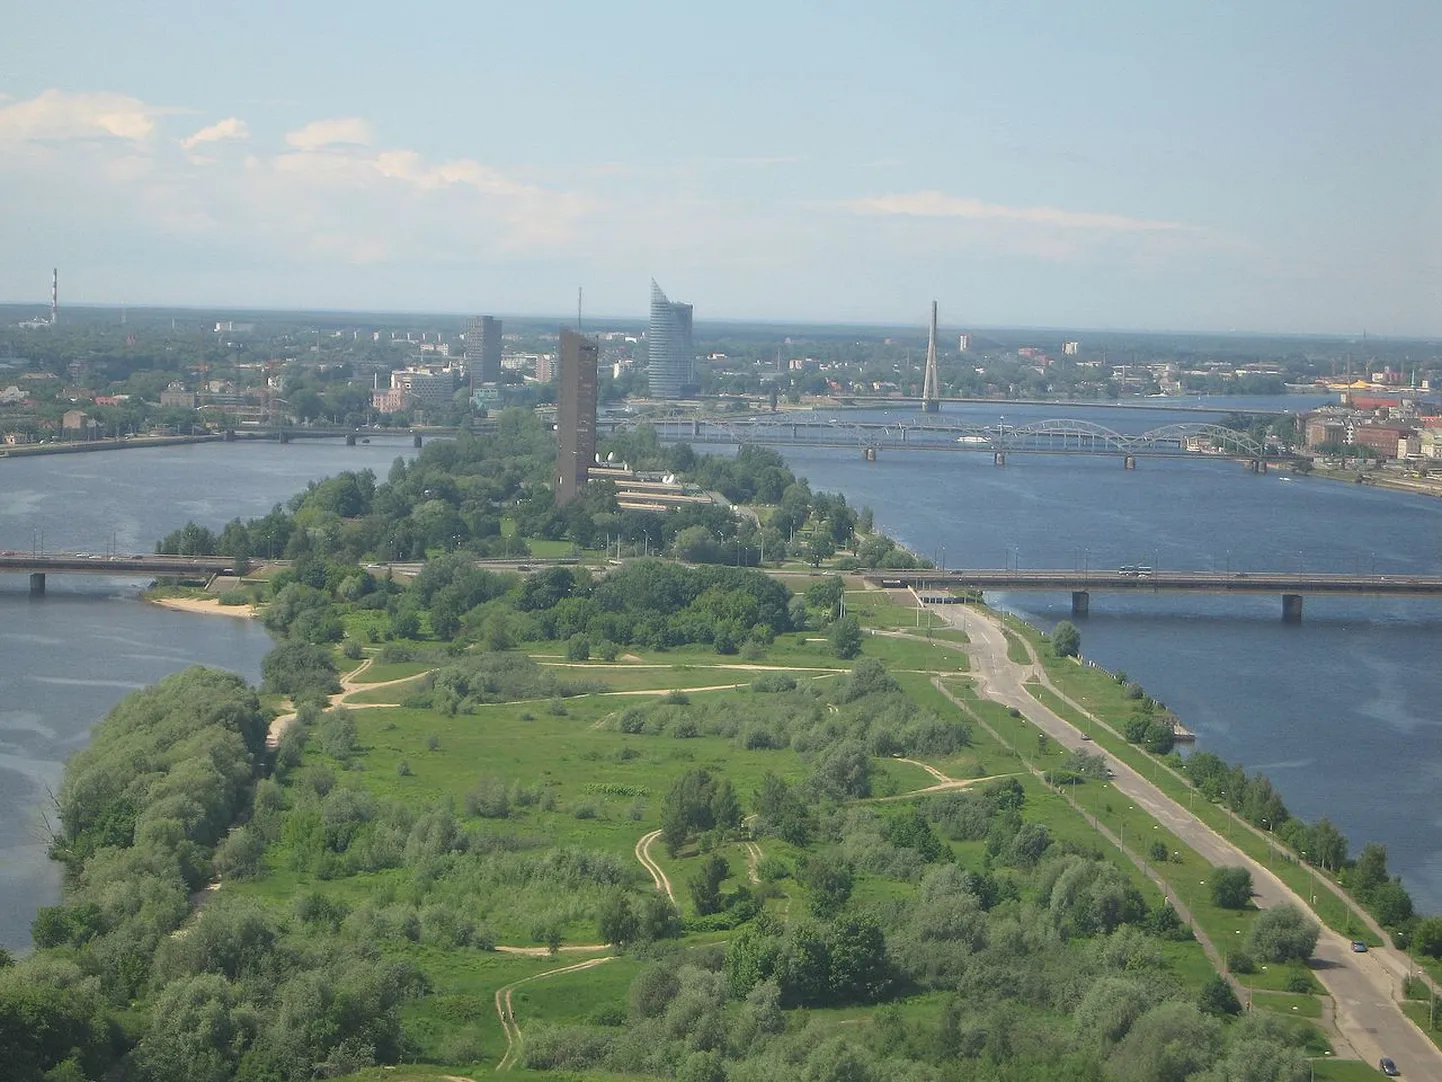 Zaķusala saar Daugava jõel, kus asub ka Läti Televisioon.